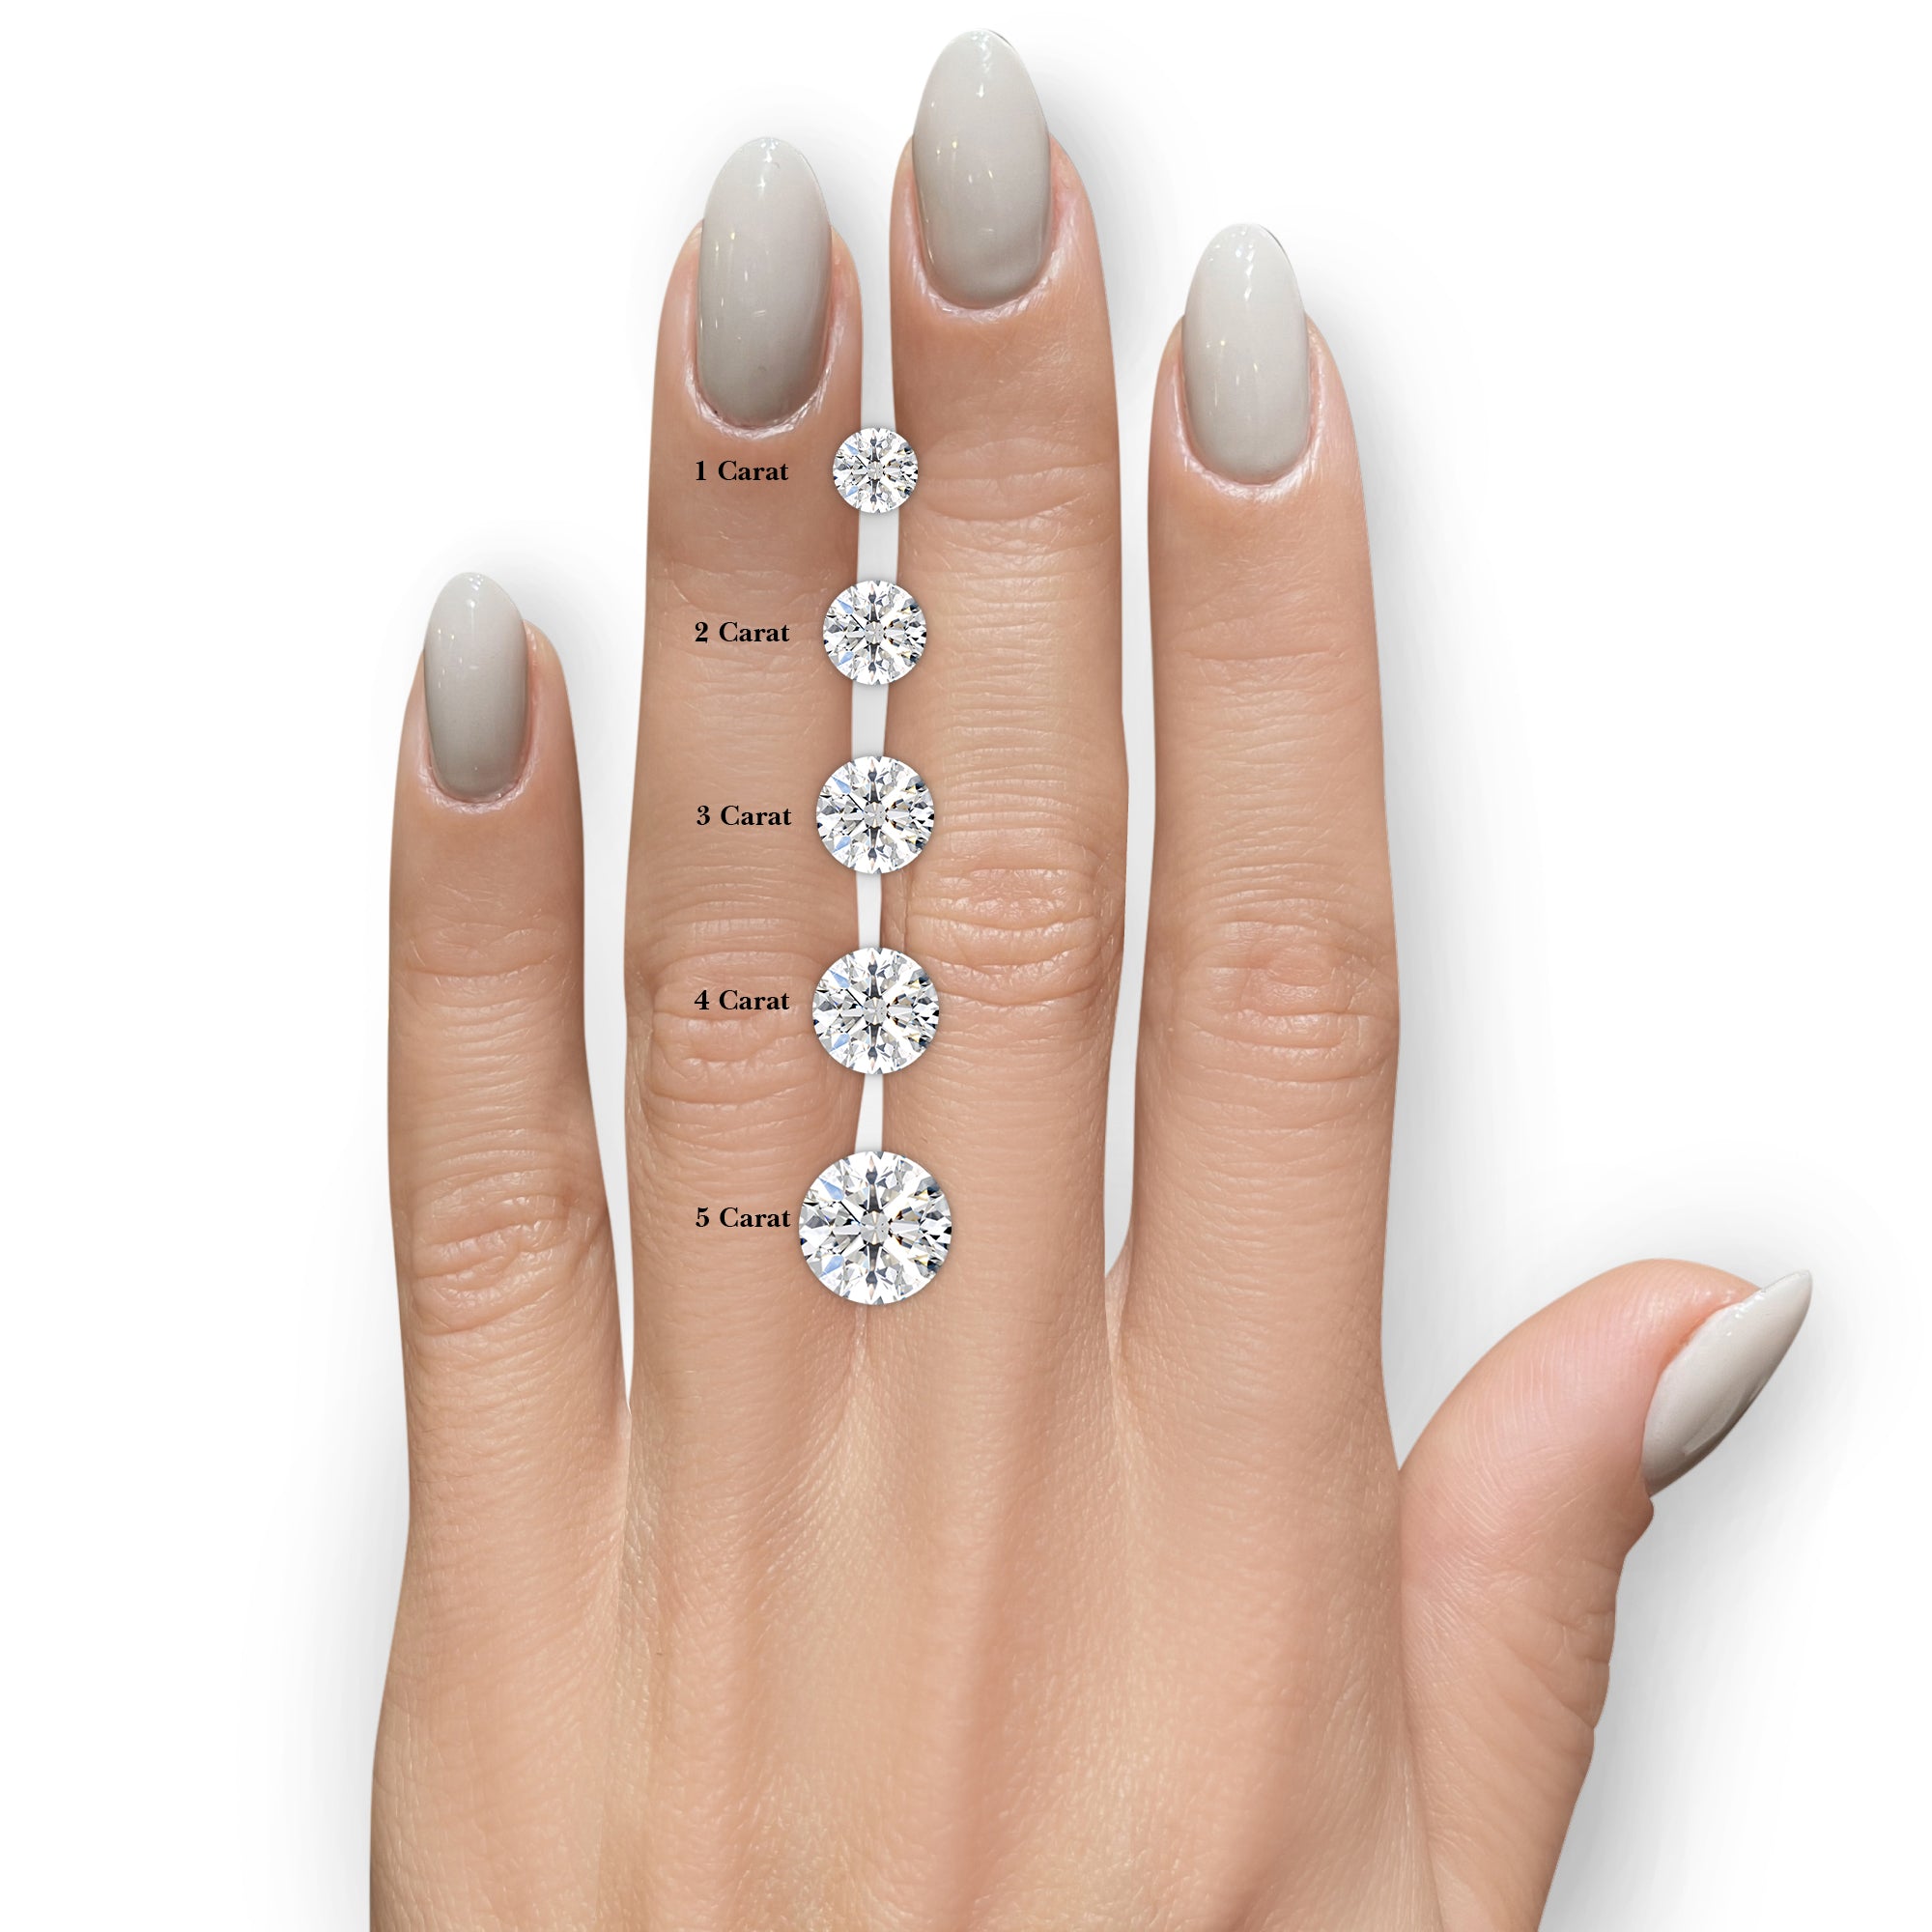 Milly Moissanite & Diamonds Ring -14K White Gold